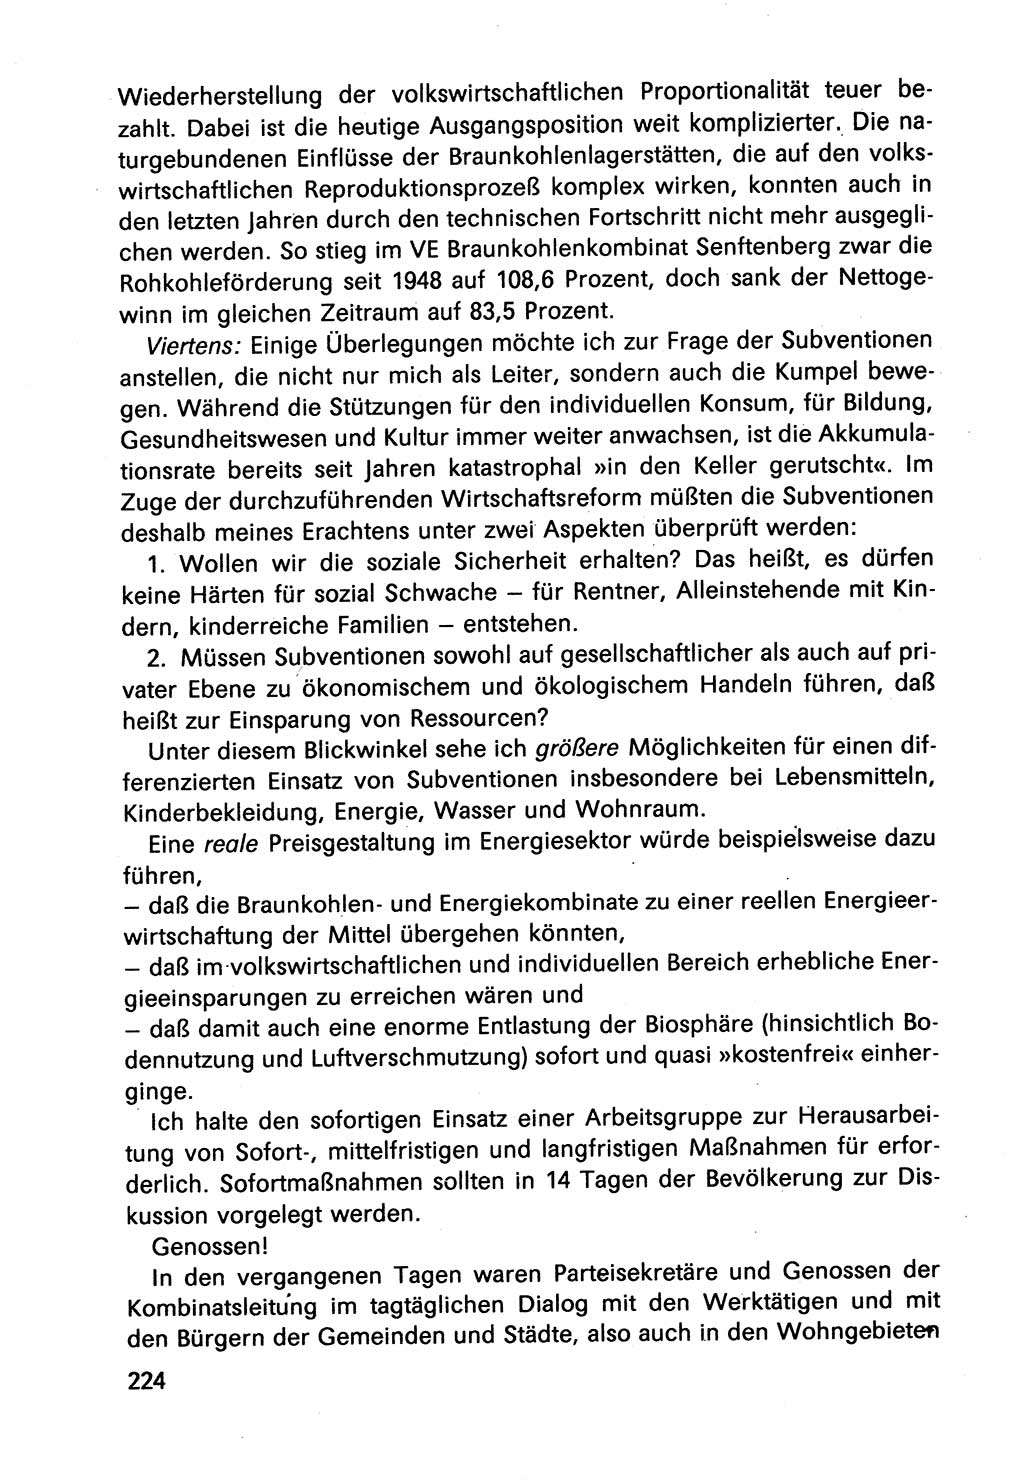 Diskussionsbeiträge, 10. Tagung des ZK (Zentralkomitee) der SED (Sozialistische Einheitspartei Deutschlands) [Deutsche Demokratische Republik (DDR)] 1989, Seite 224 (Disk.-Beitr. 10. Tg. ZK SED DDR 1989, S. 224)